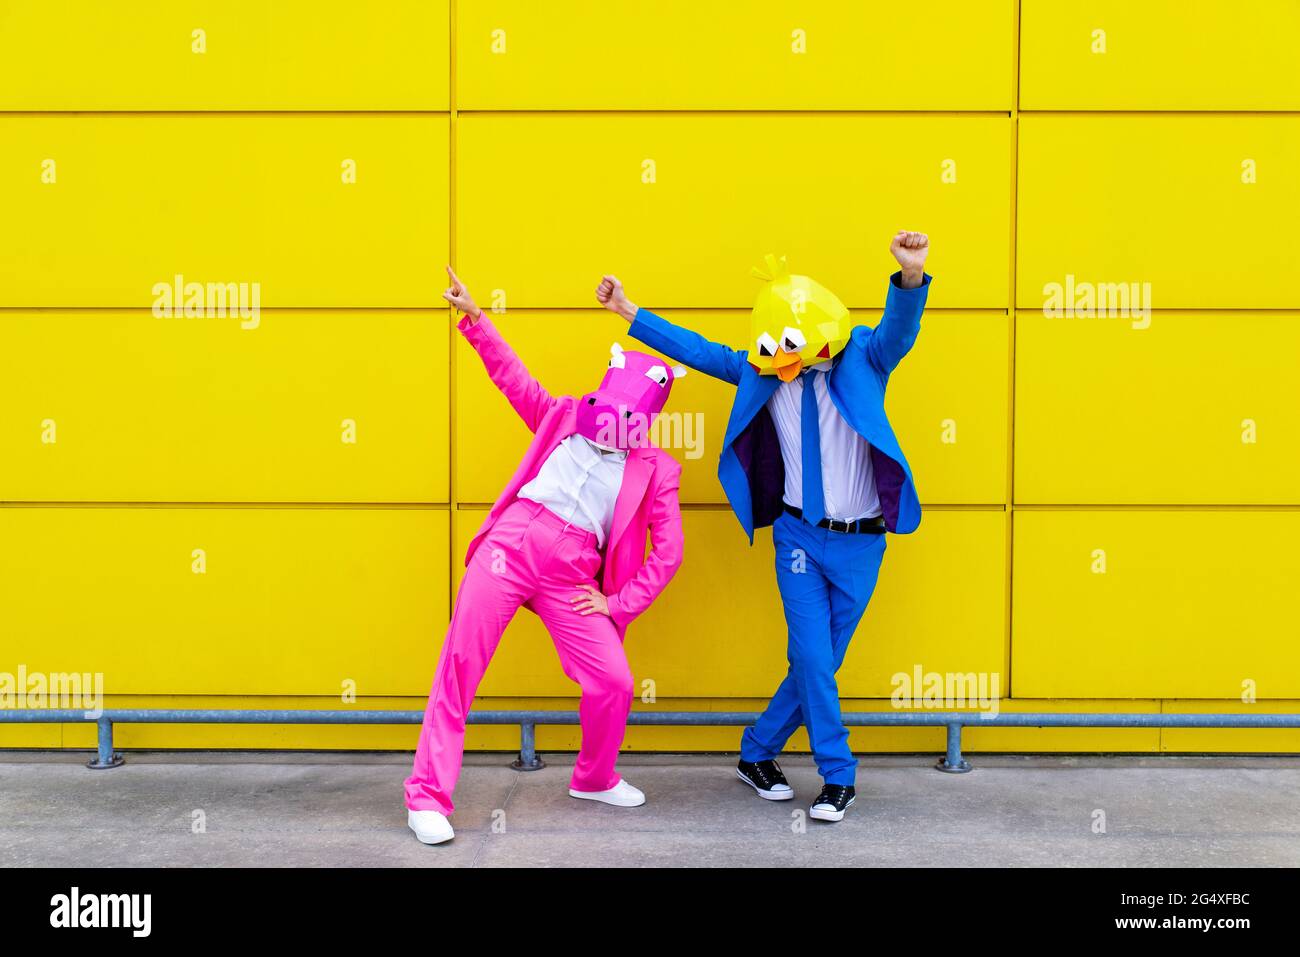 Homme et femme portant des costumes vibrants et des masques d'animaux dansant devant le mur jaune Banque D'Images